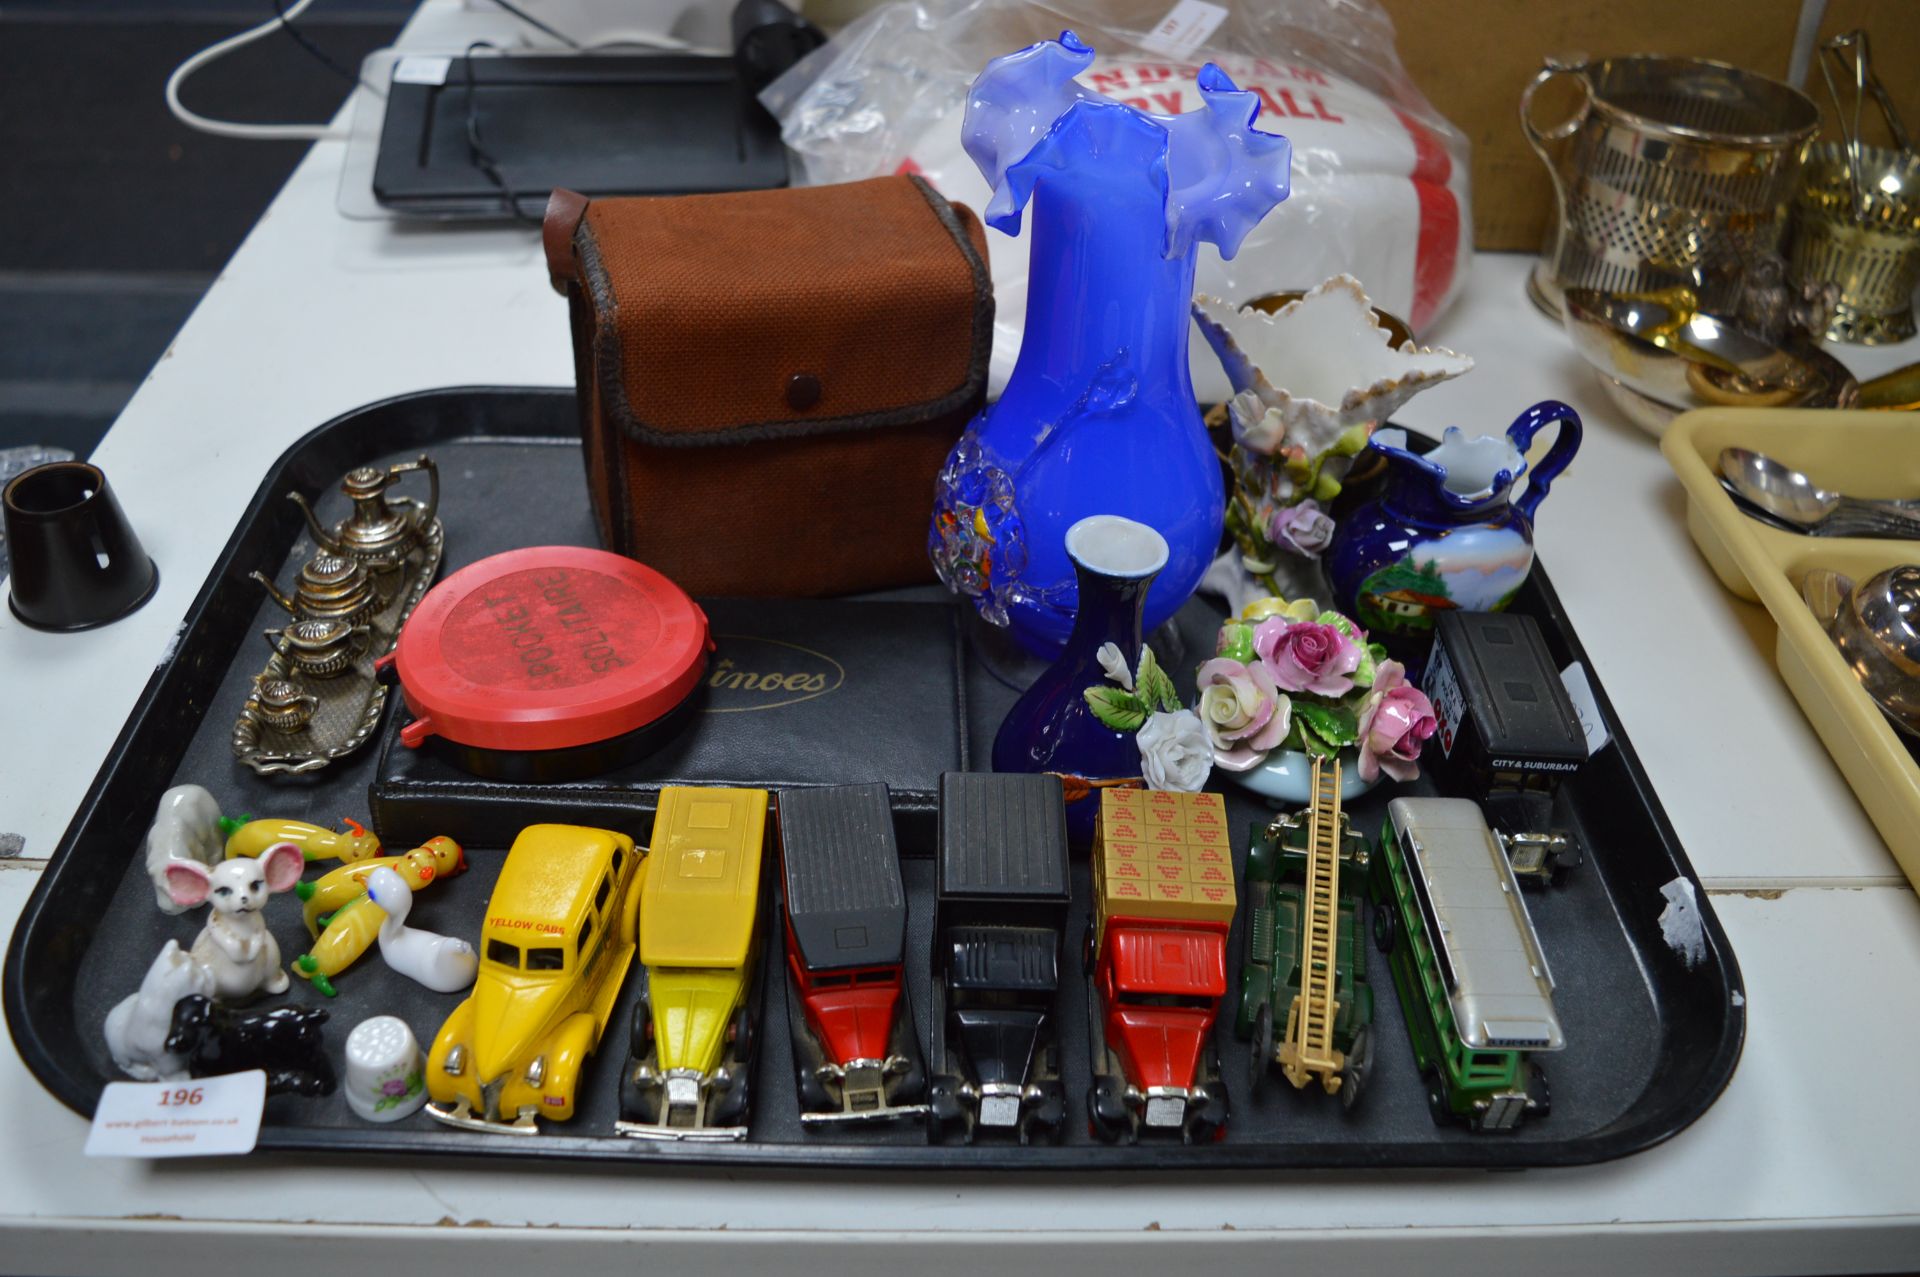 Diecast Toy Cars, Glassware, Miniature Animals, et